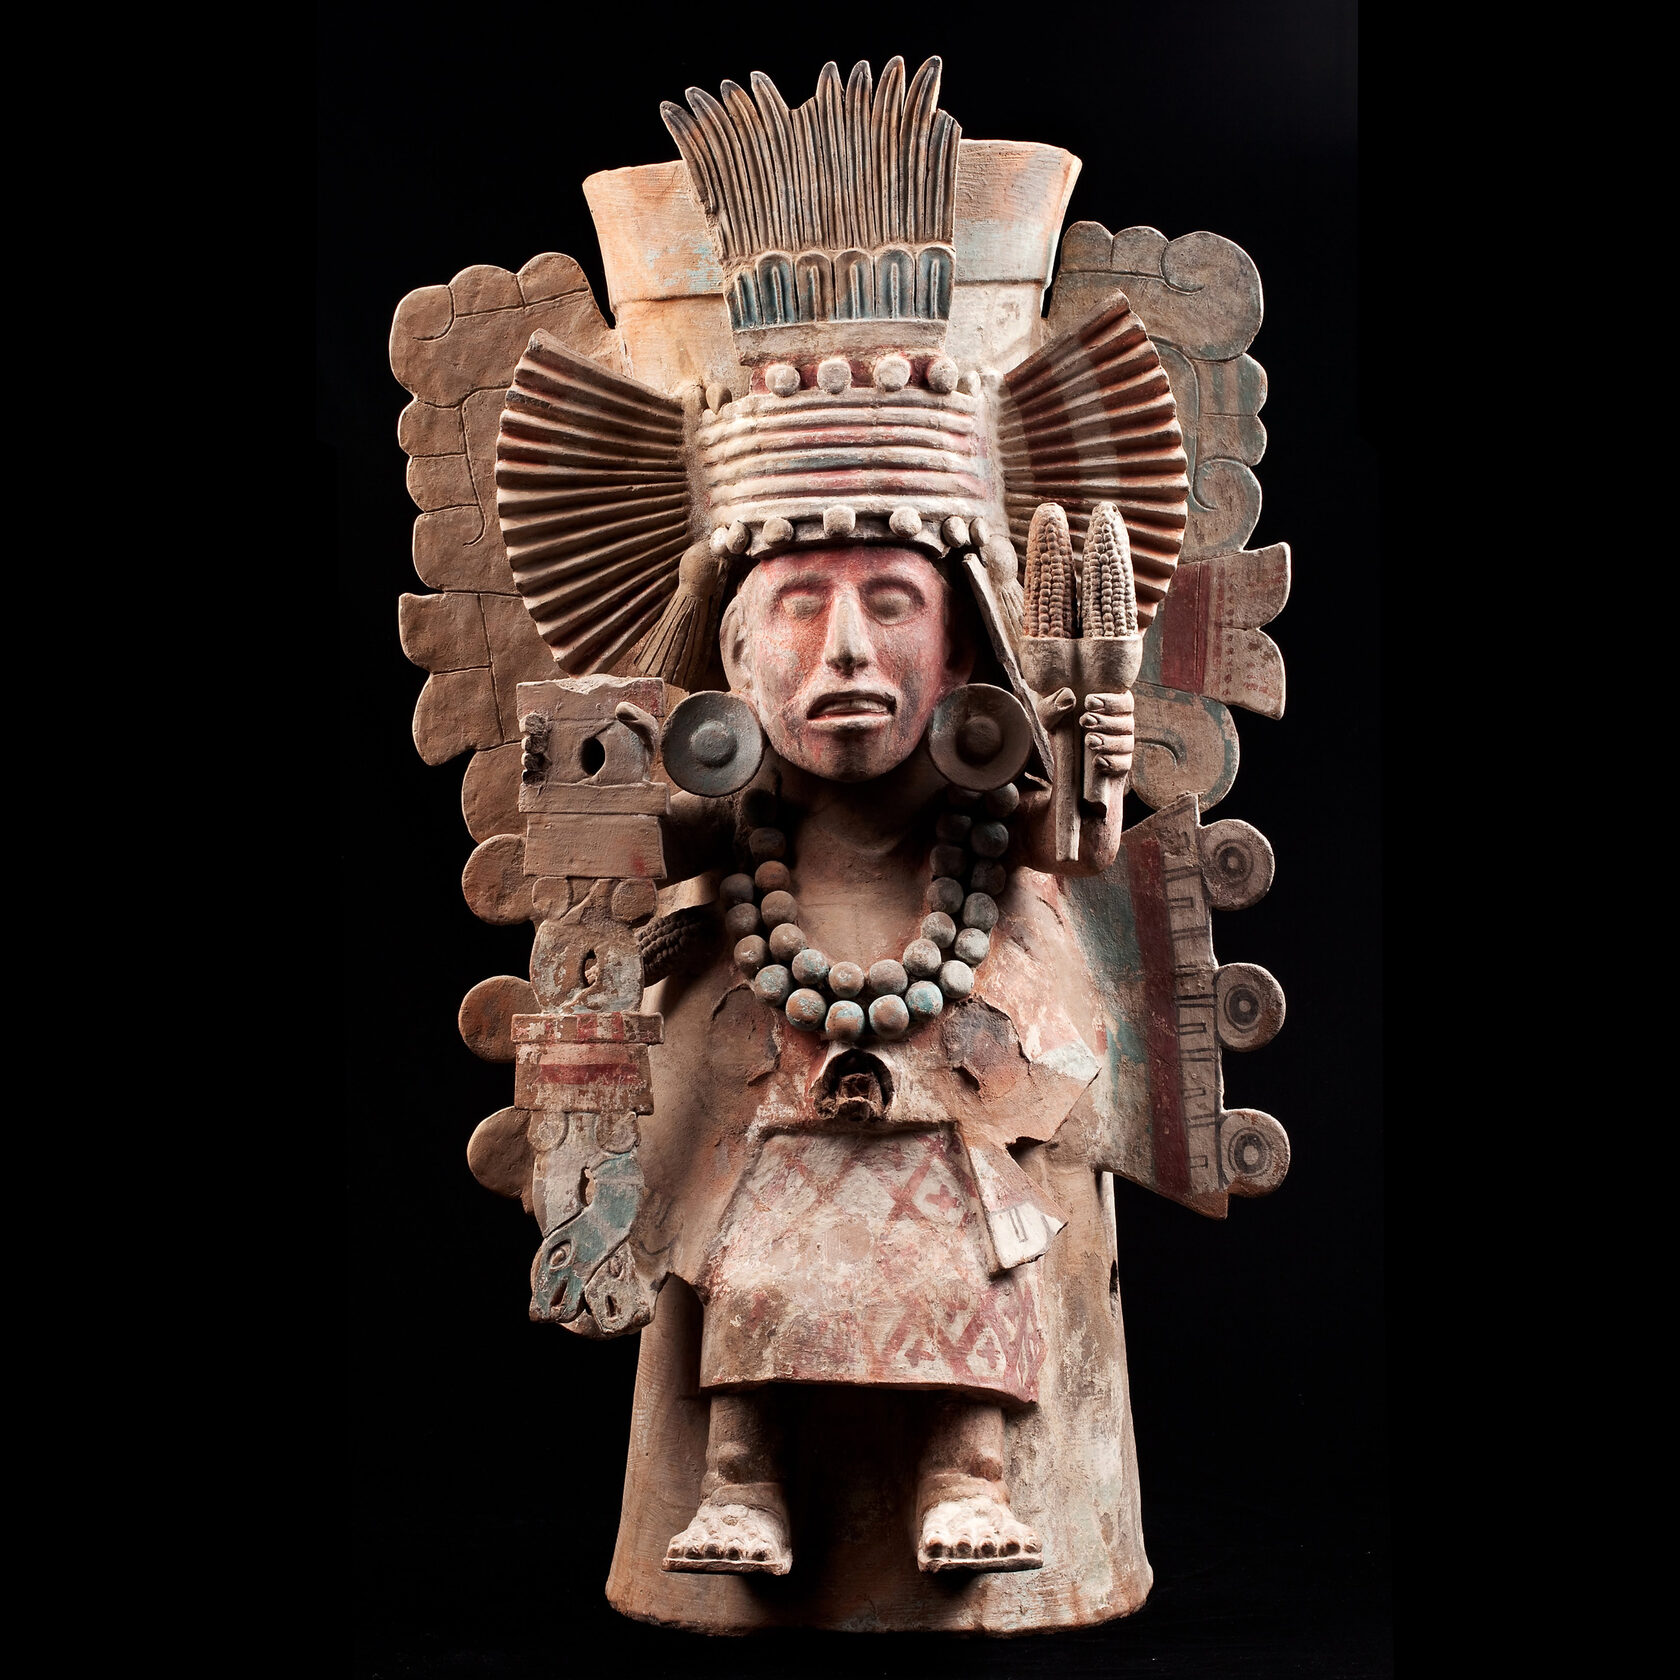 Жаровня с изображением Чальчиутликуэ. Мексика, 1325-1521 гг. н.э. Коллекция Museo Nacional de Antropologia, Мехико.